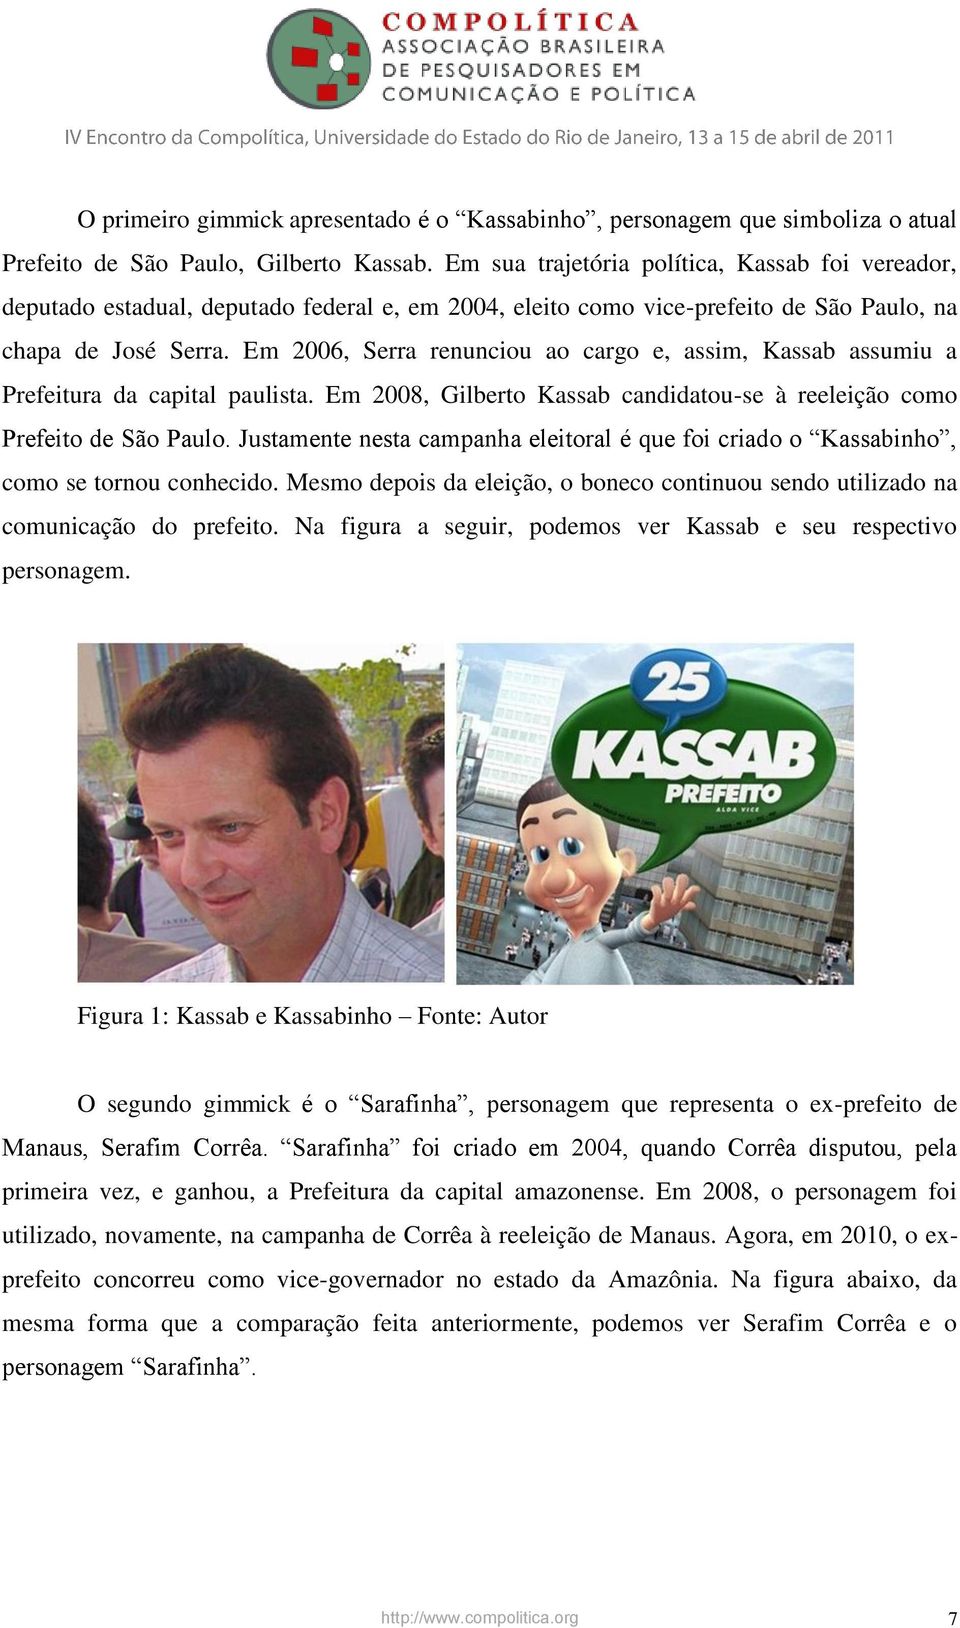 Em 2006, Serra renunciou ao cargo e, assim, Kassab assumiu a Prefeitura da capital paulista. Em 2008, Gilberto Kassab candidatou-se à reeleição como Prefeito de São Paulo.